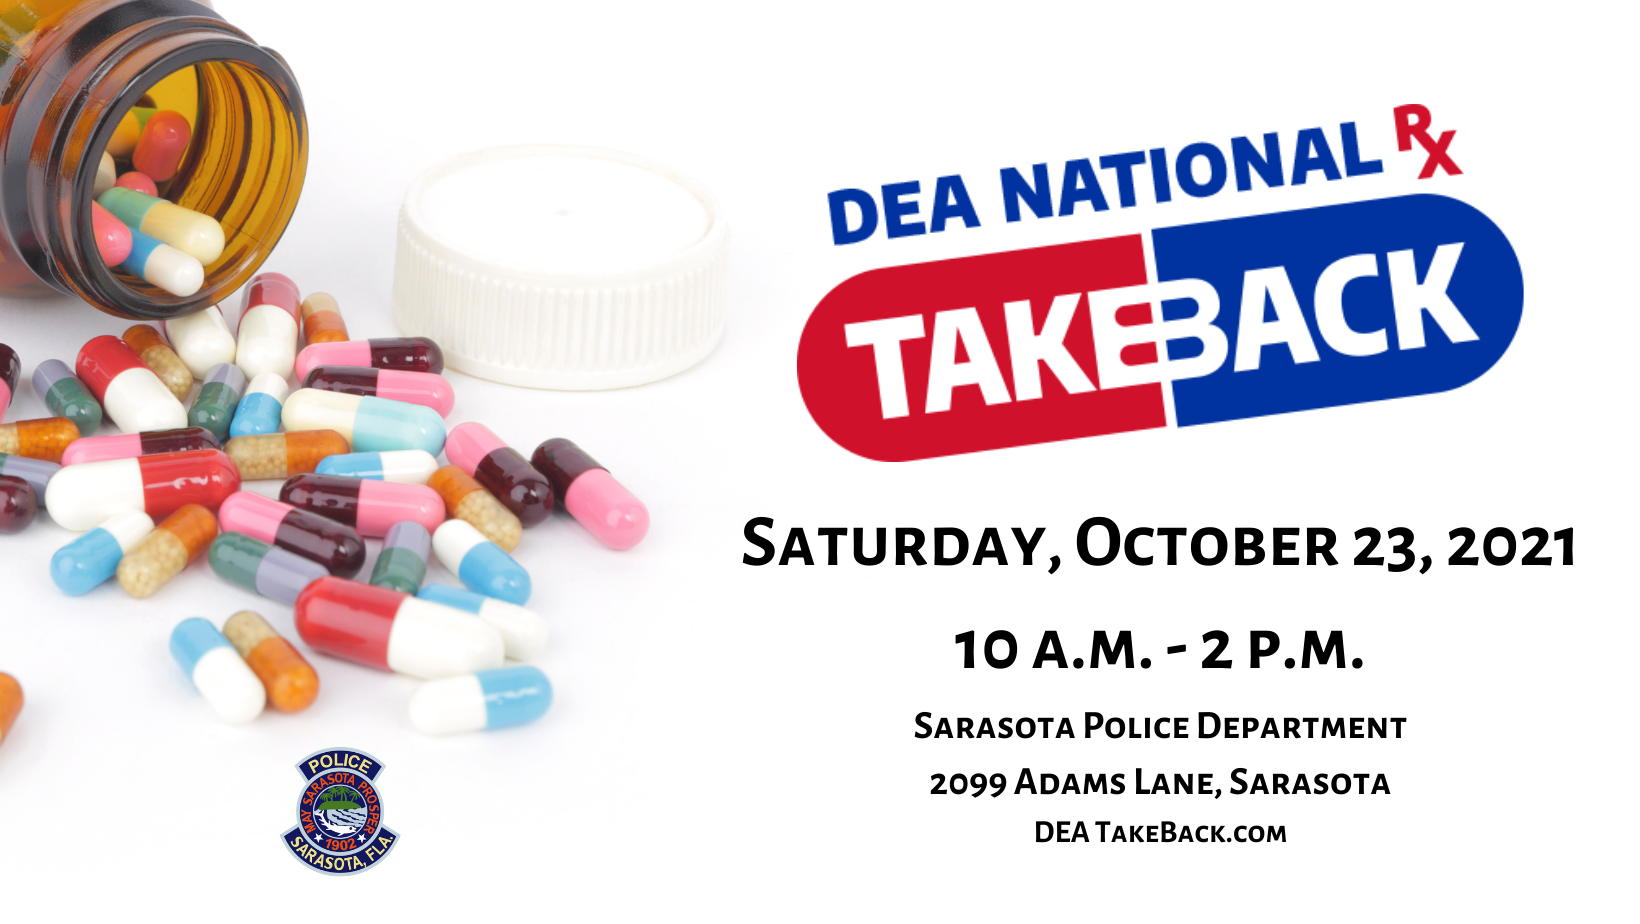 Saturday, October 23, 2021 10 a.m. - 2 p.m. DEATakeBack.com